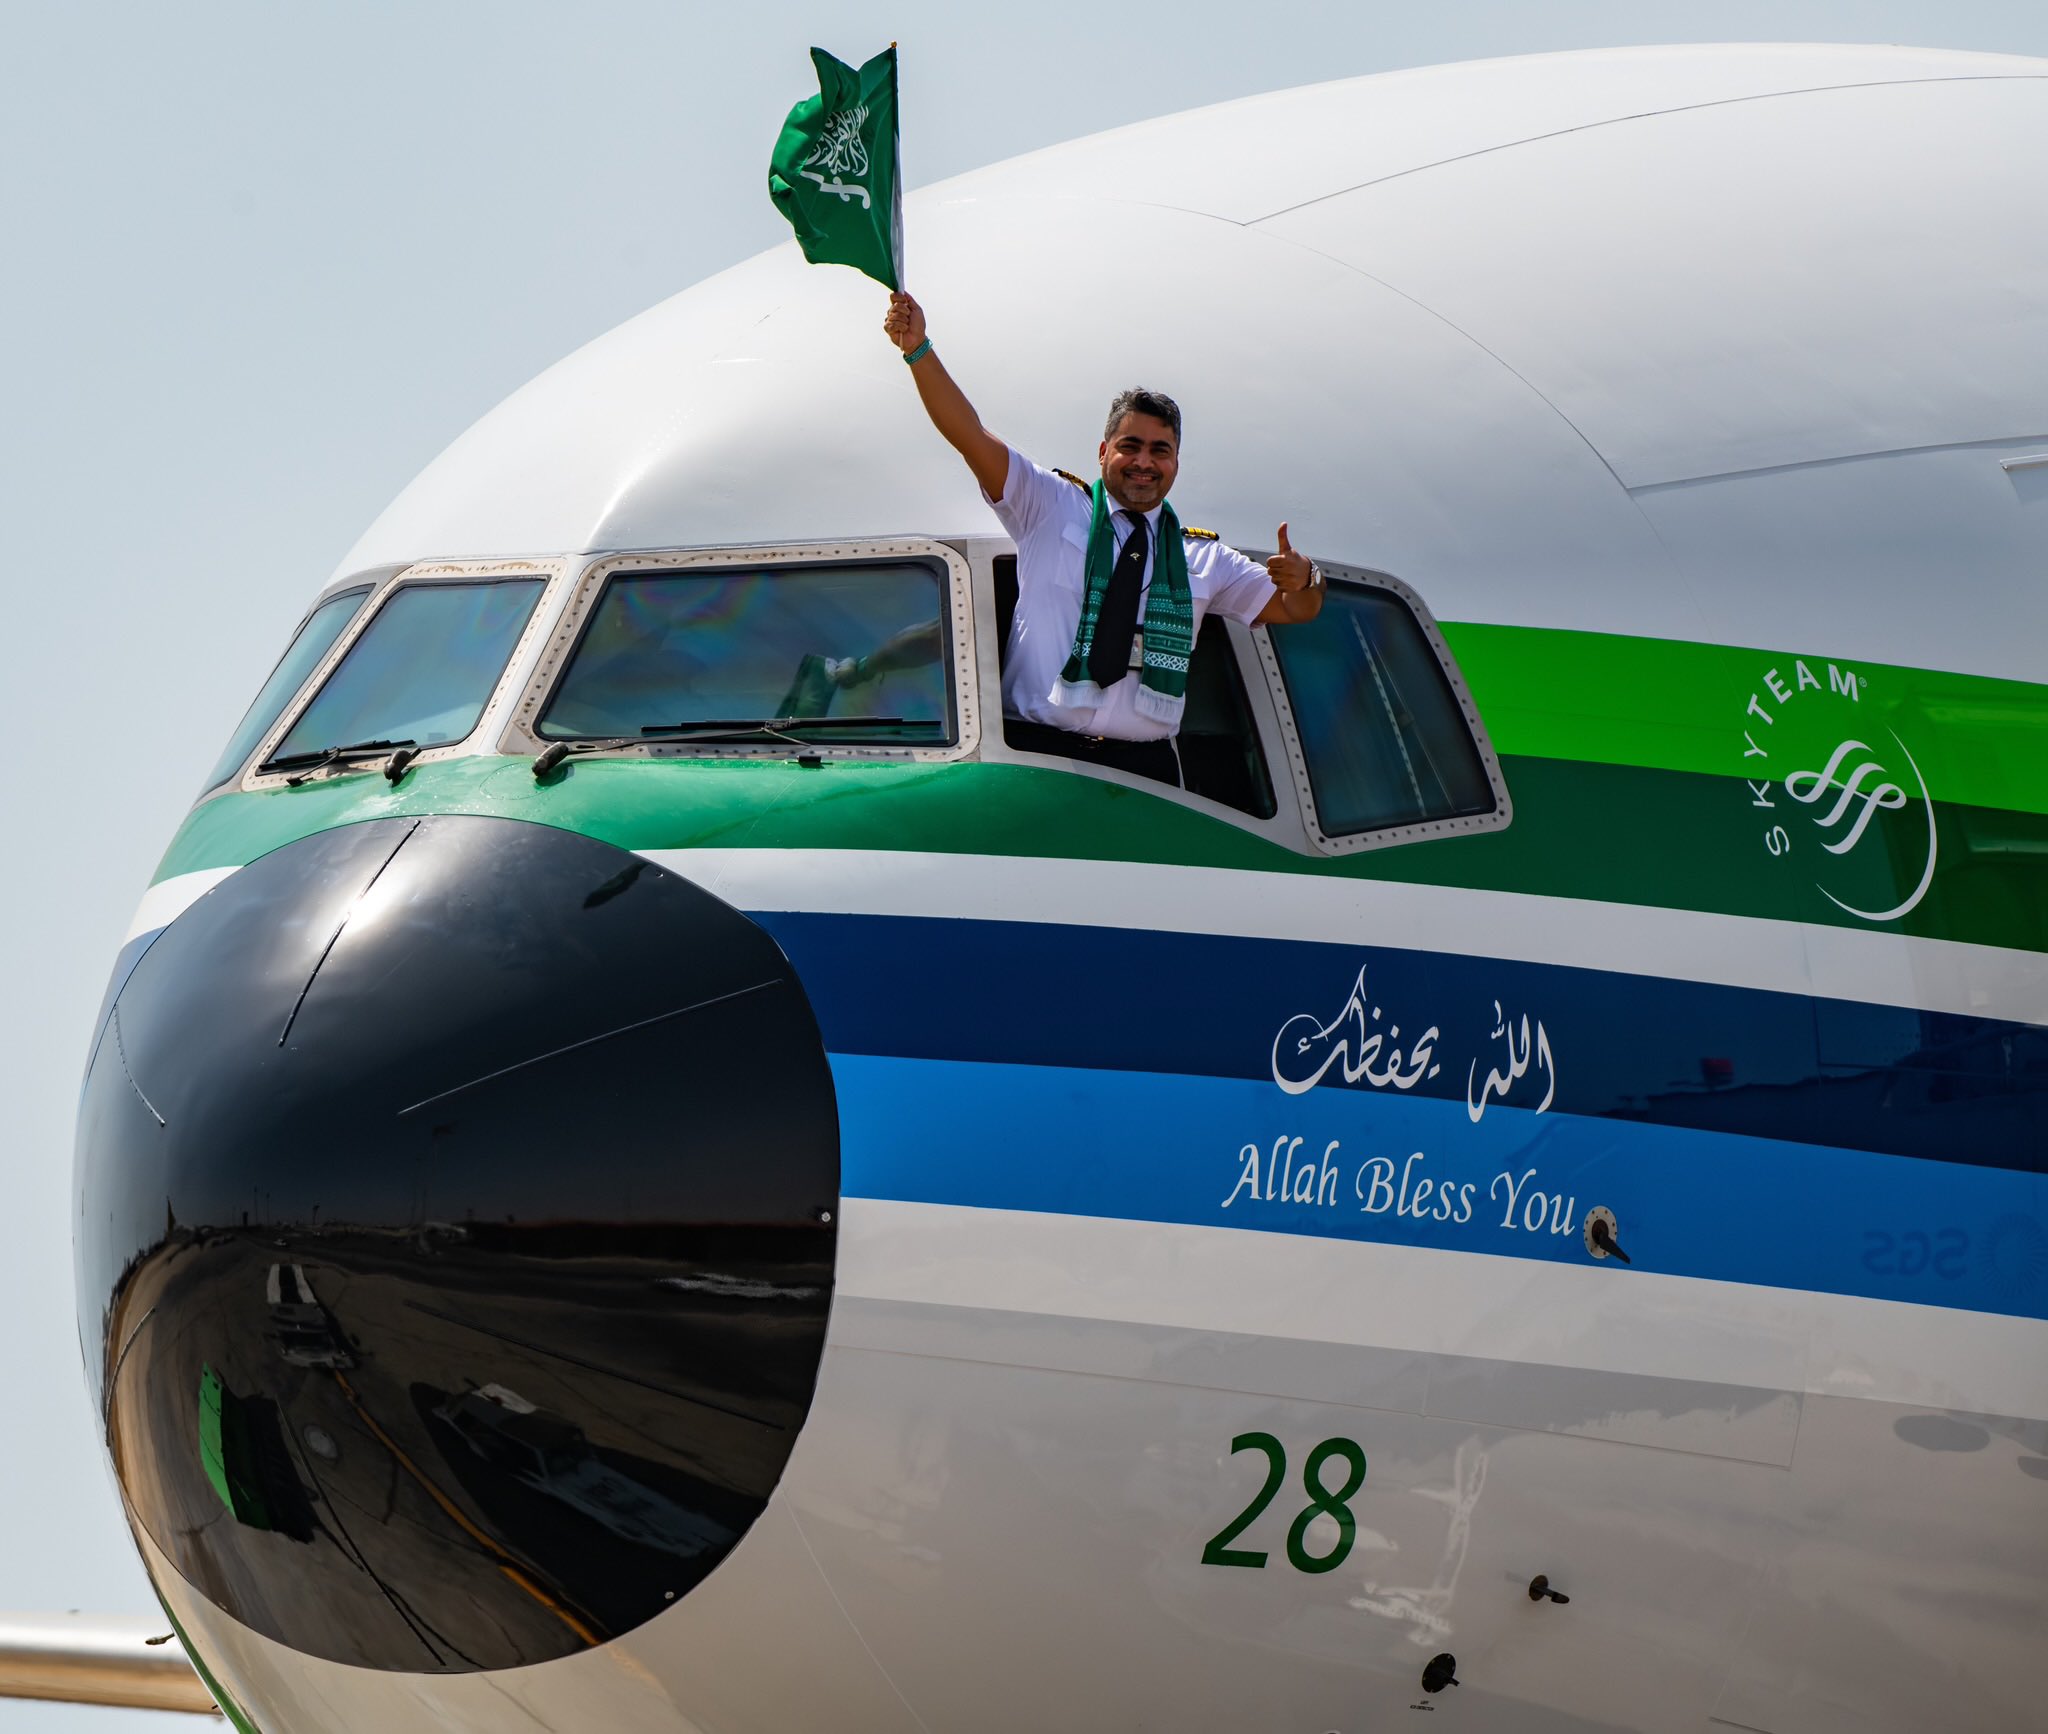 Saudia Airlines divulga mensagem sobre vitória na Copa do Mundo